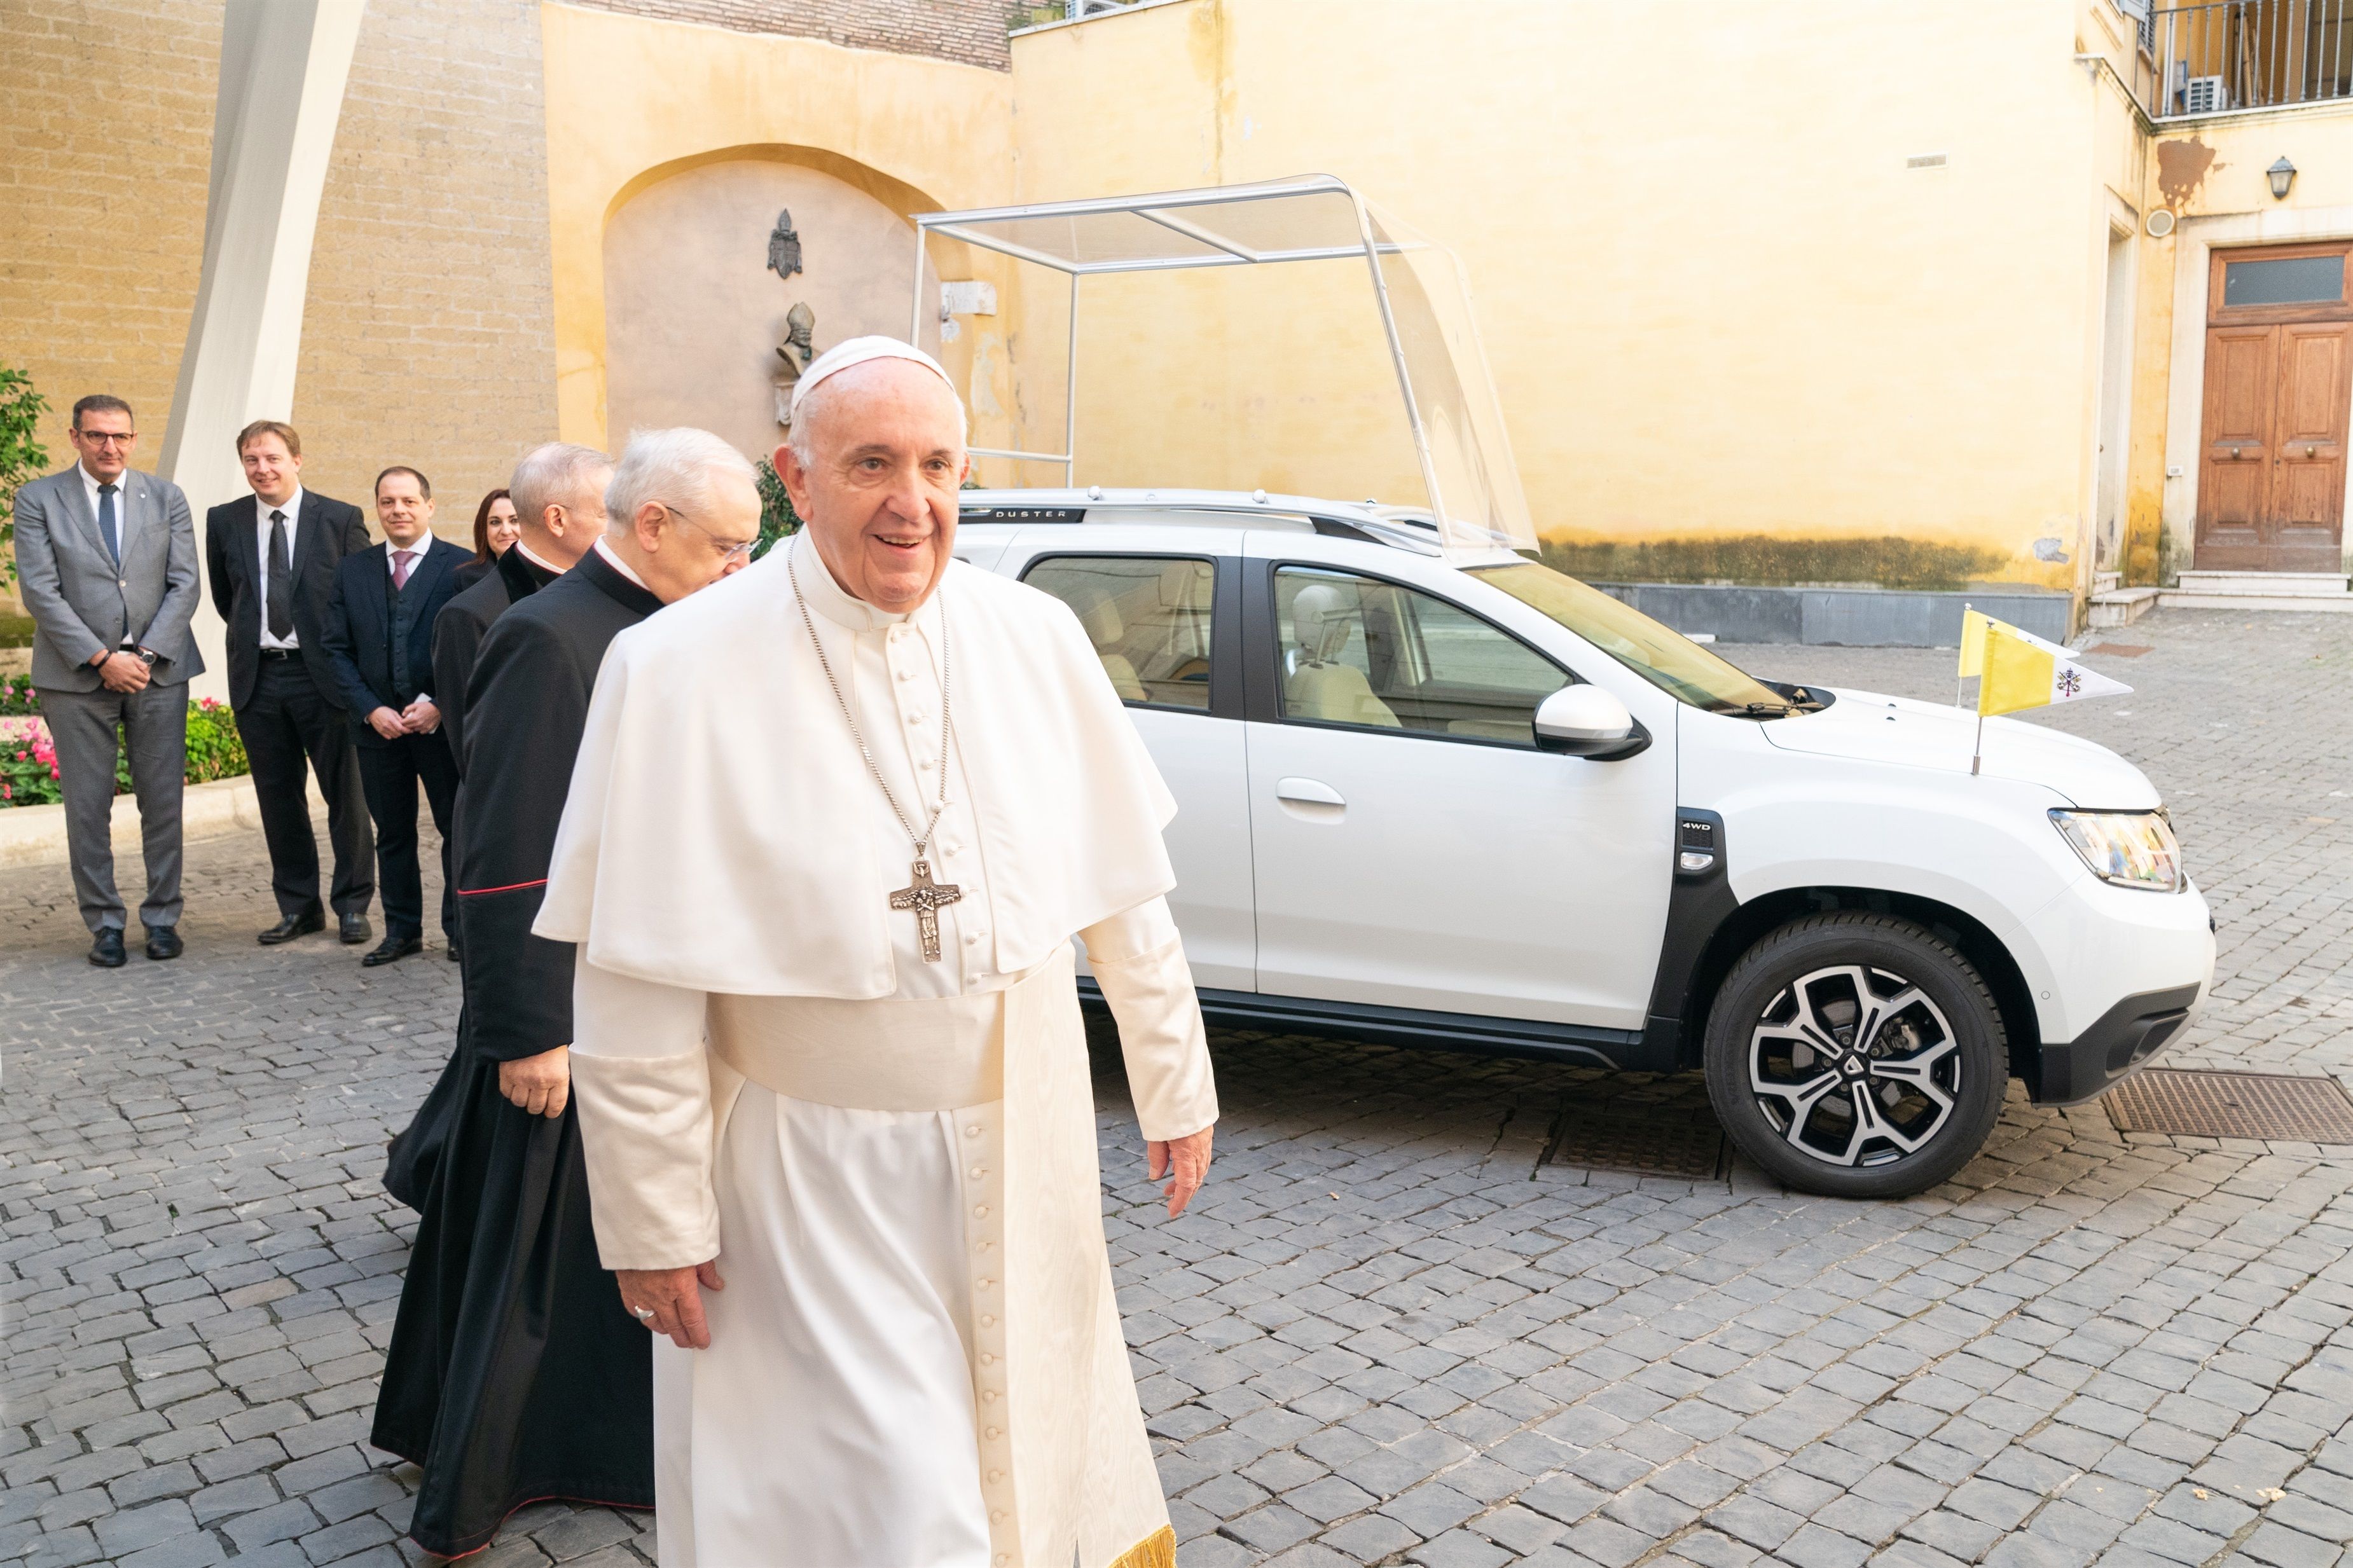 El Papa Francisco a los jóvenes: "Déjense iluminar por los consejos y el testimonio de los mayores"